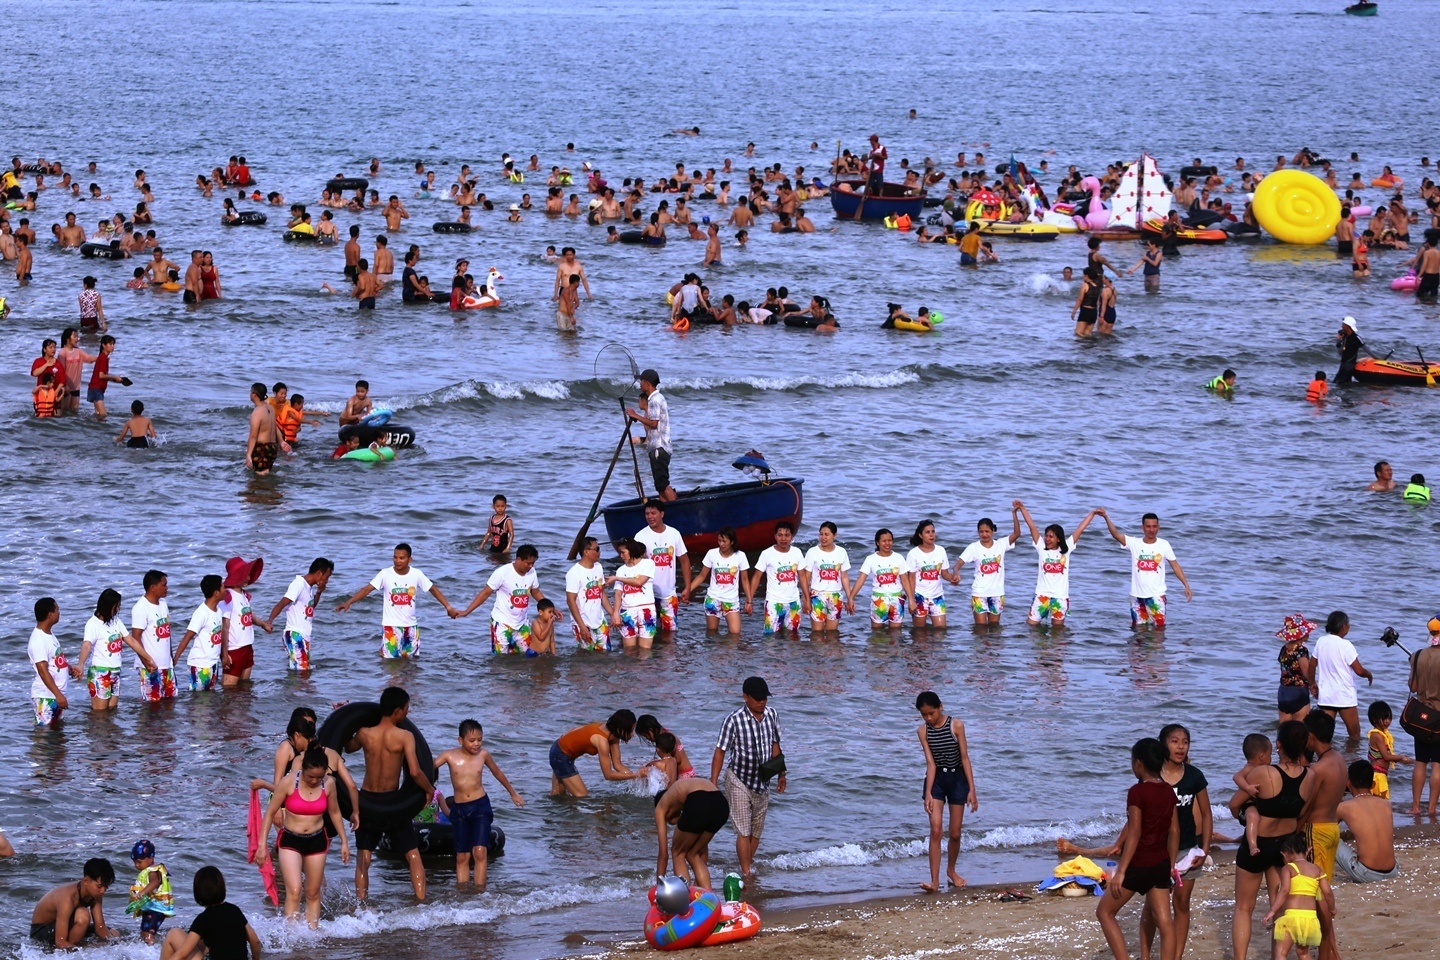 Về Cửa Lò du khách tha hồ thỏa thích vui chơi hay tổ chức các hoạt động, trò chơi đội, nhóm trên bãi biển.